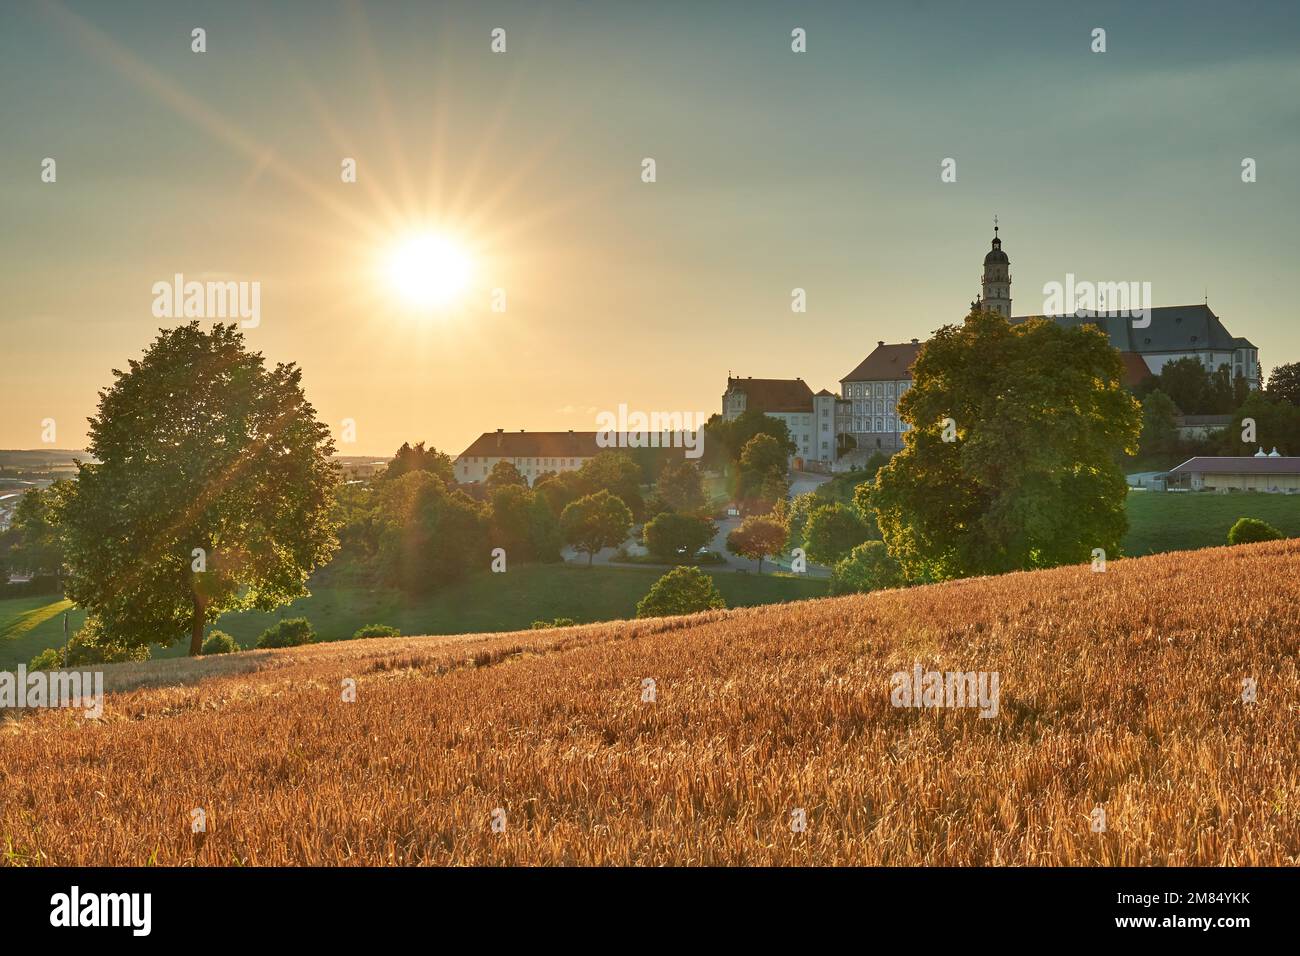 Kloster Neresheim mit Getreidefeld in der Abendsonne Banque D'Images